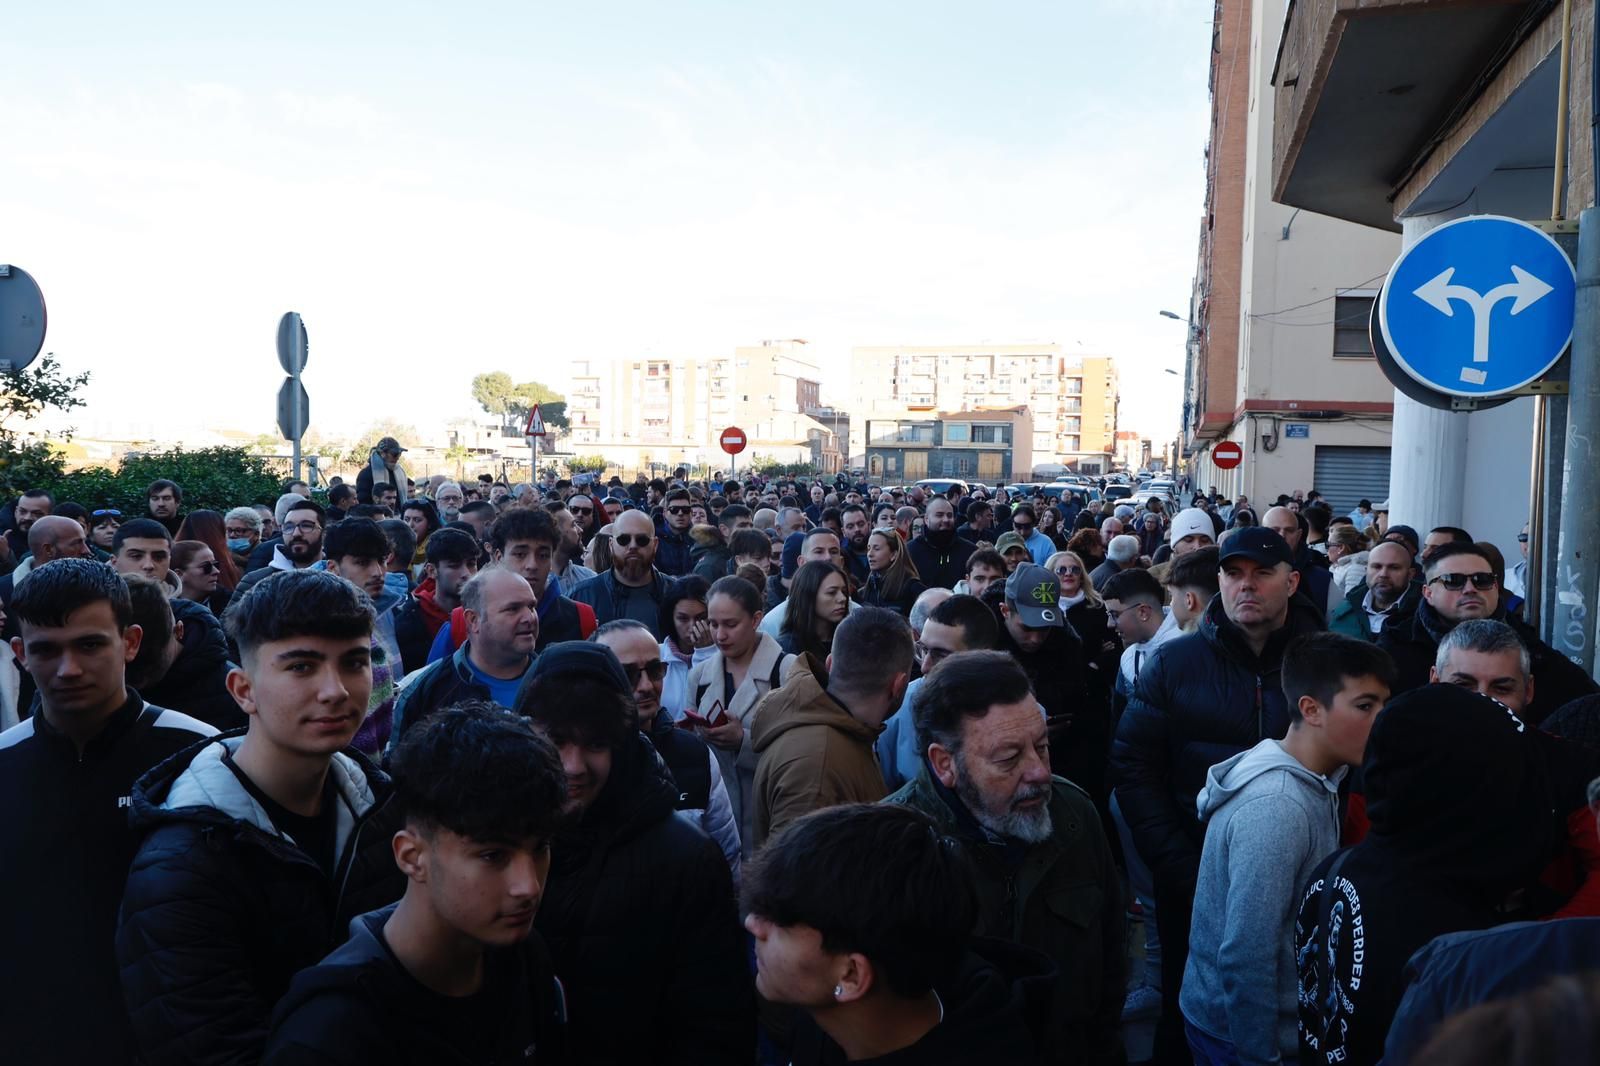 Más de 300 personas acuden a desokupar una vivienda en Castellar con fuerte presencia de la Guardia Civil